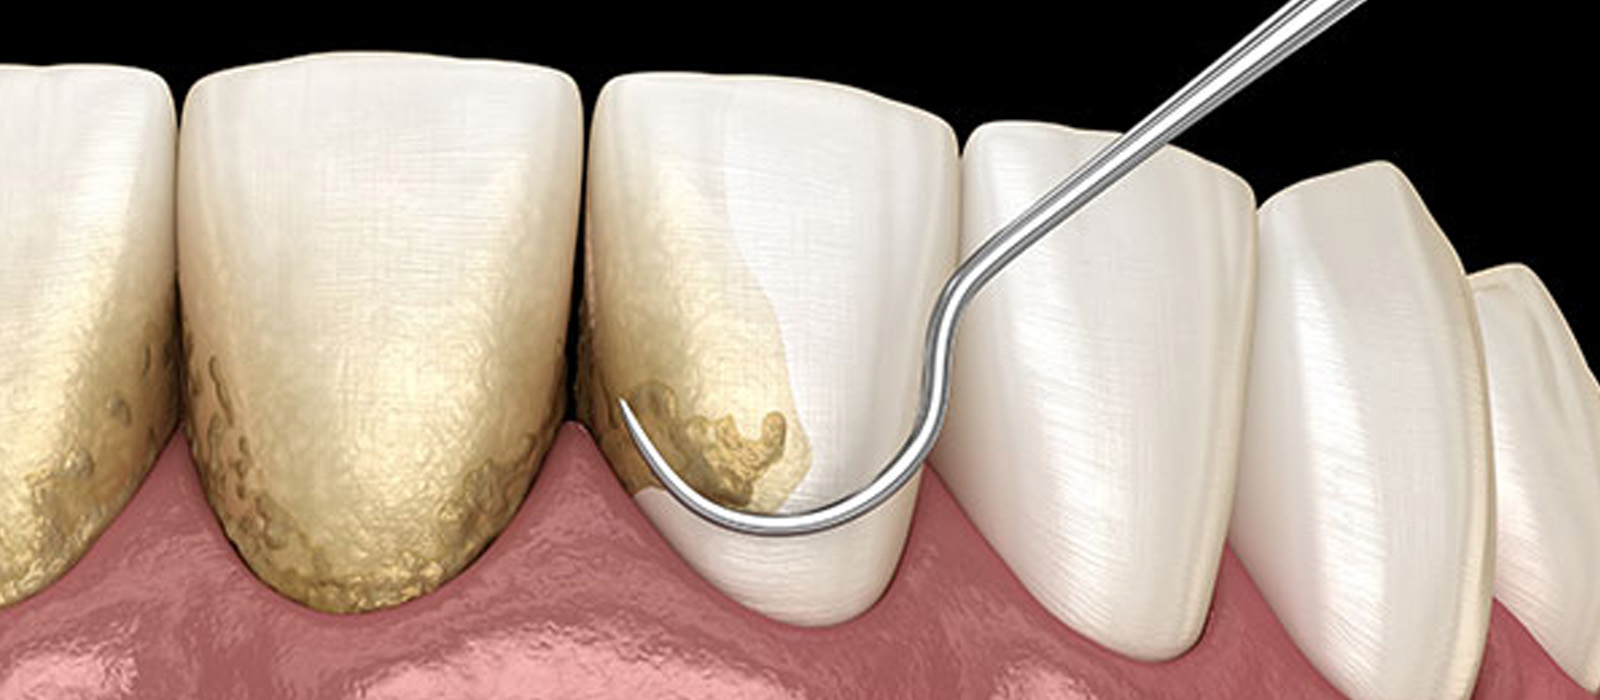 歯周病の原因と症状